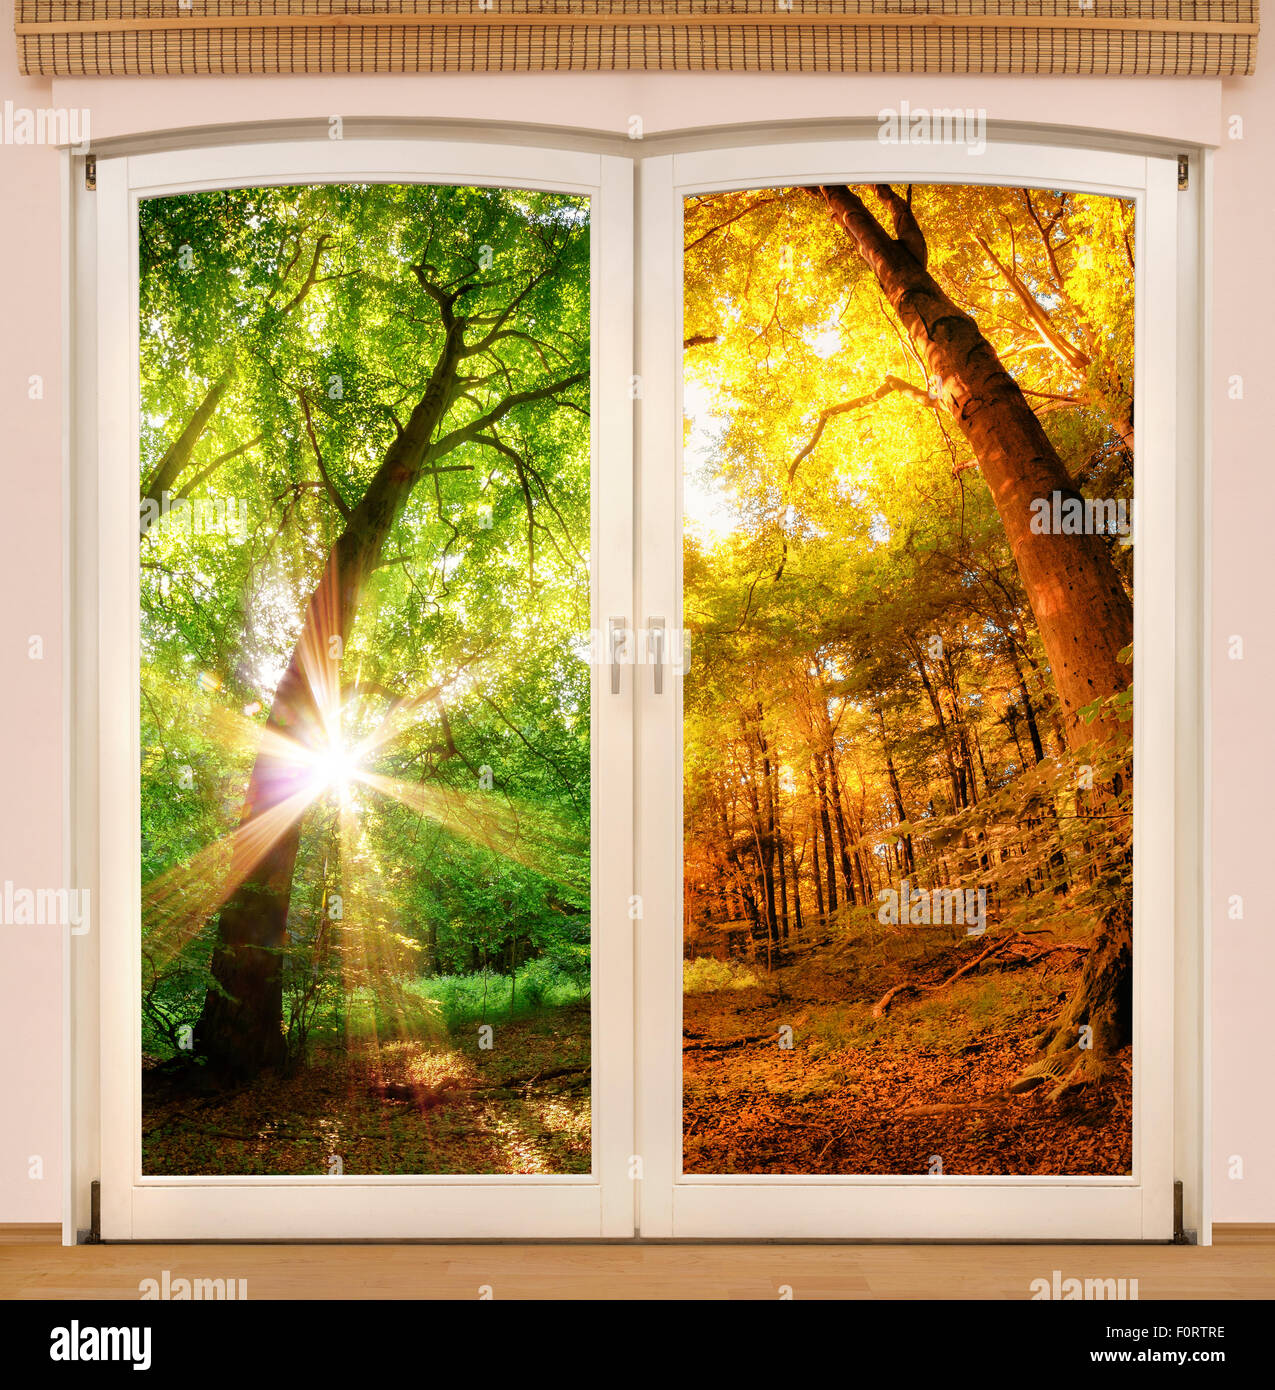 Magic ventana mostrando el cambio de las estaciones, con un soleado mitad del bosque en verano y la otra mitad en colores de otoño Foto de stock